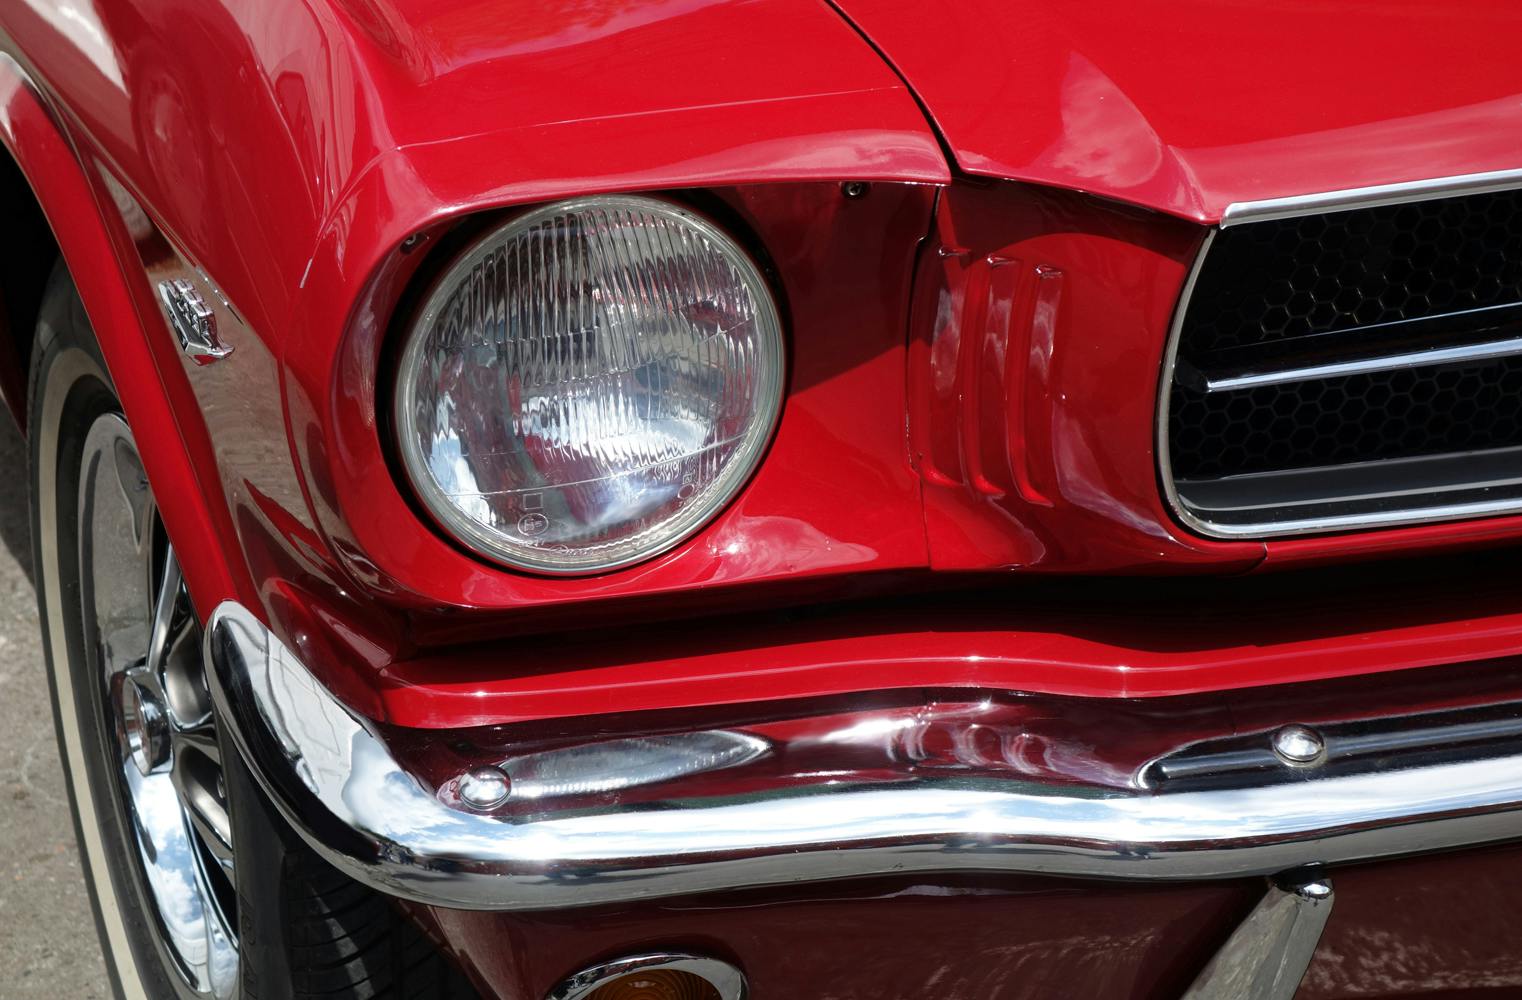 1965 Ford Mustang selber fahren | 24 Stunden mieten